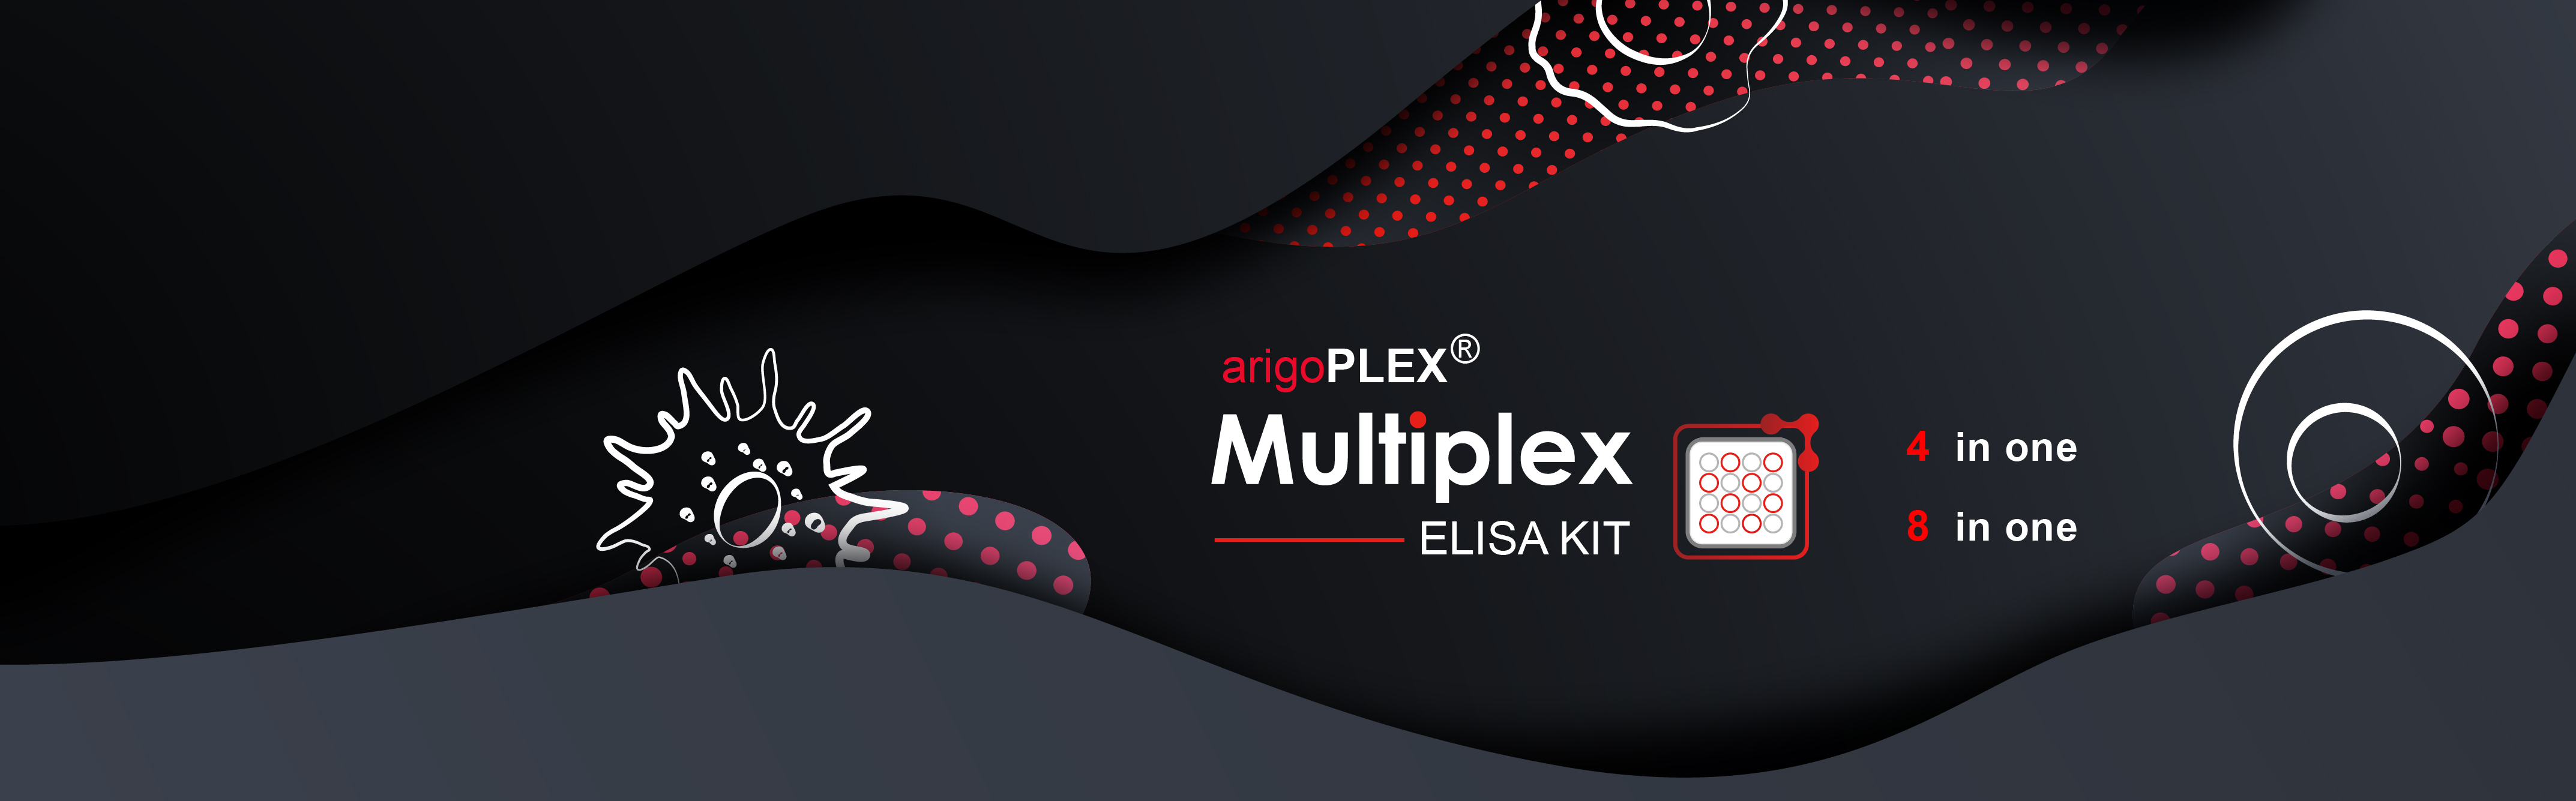 ArigoPlex Multiplex ELISA kits